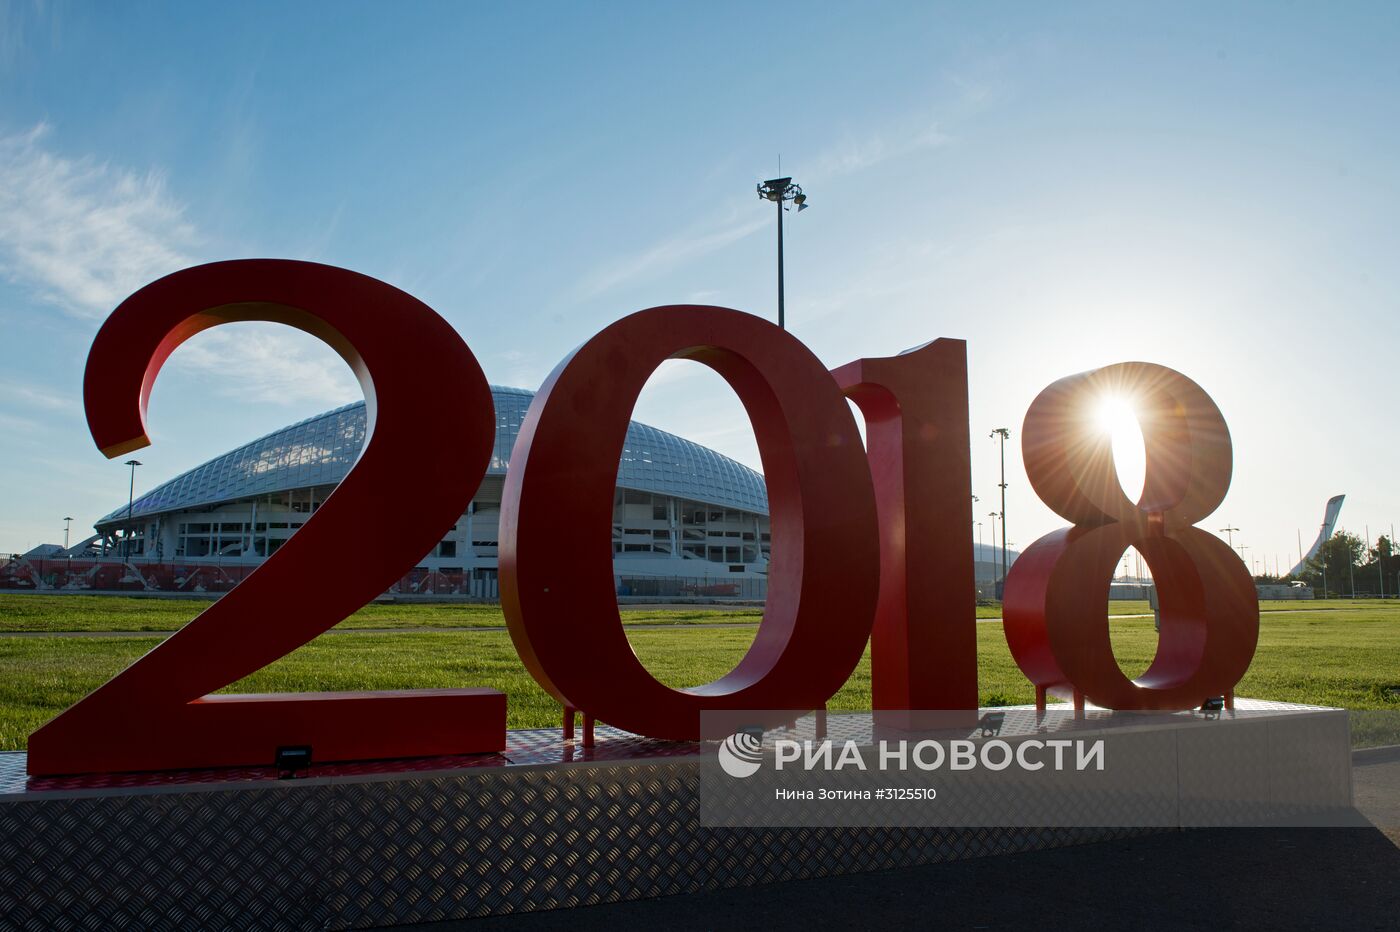 Подготовка к Кубку конфедераций 2017 в Сочи